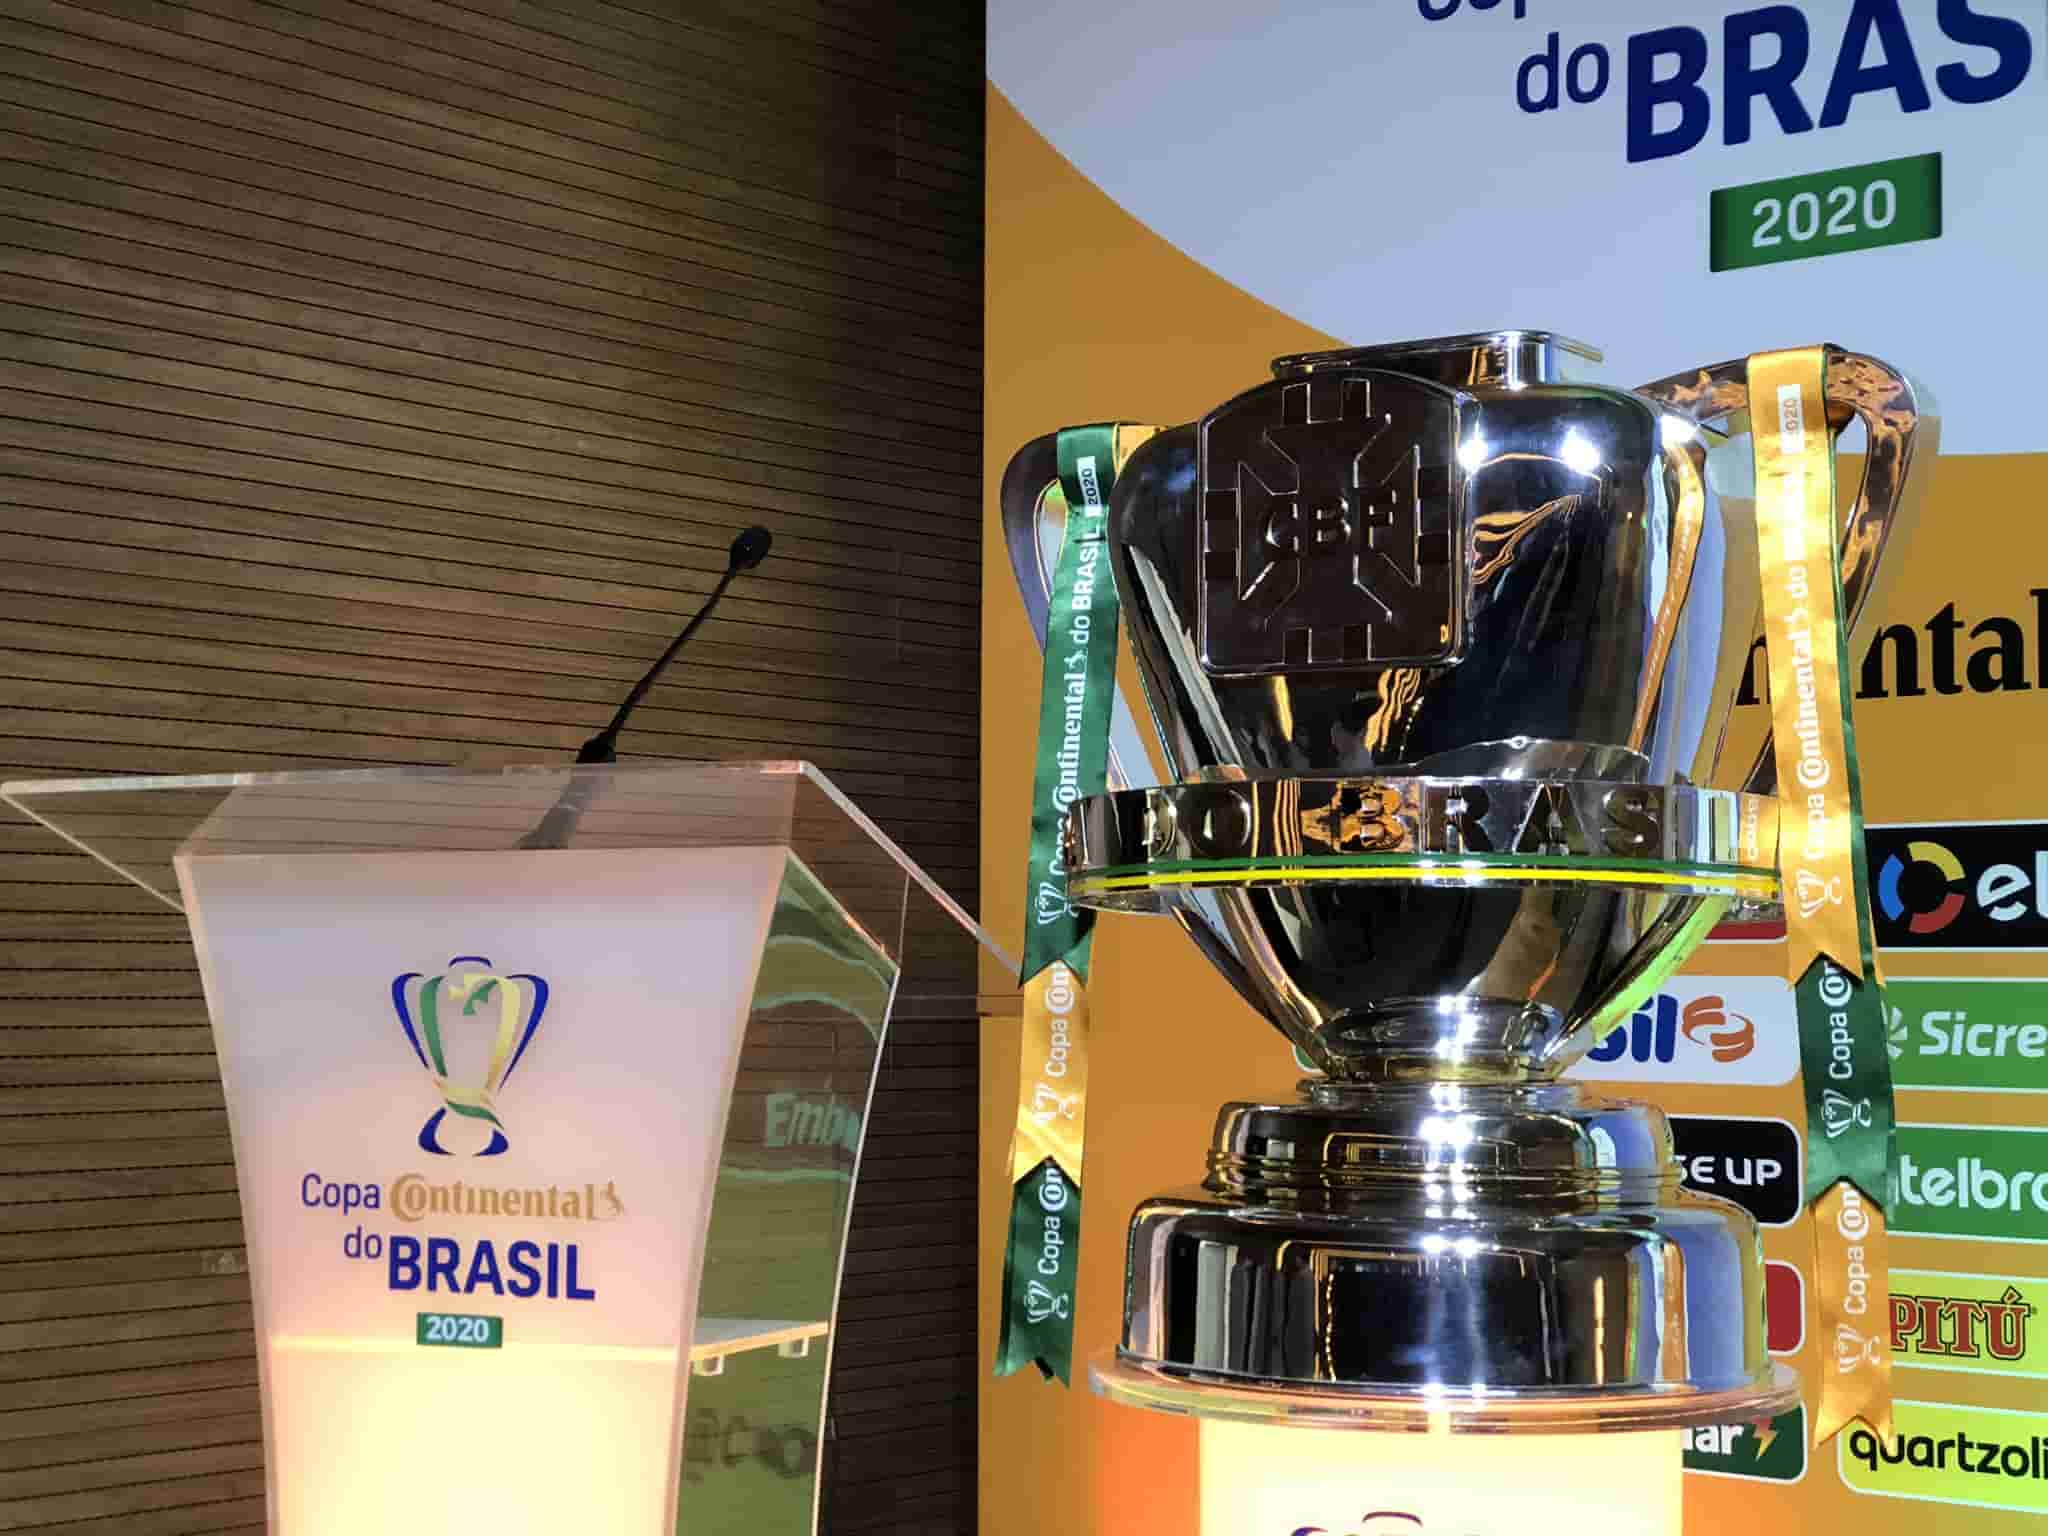 Copa do Brasil 22: Corinthians faz primeiro jogo da final contra o